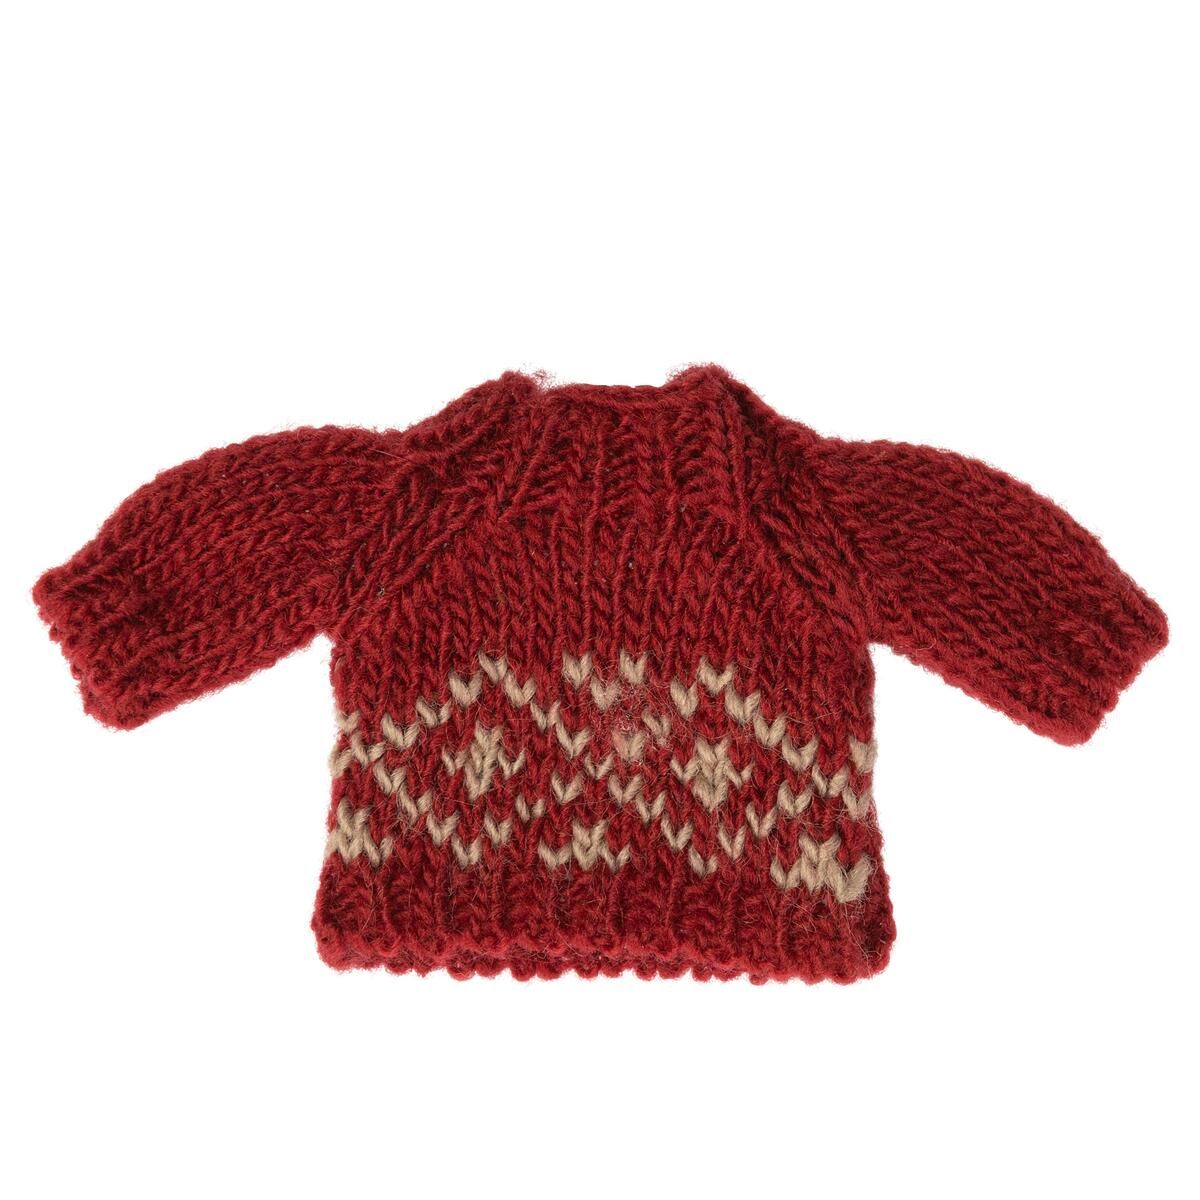 Rød striksweater med hvidt mønster til Maileg mor mus